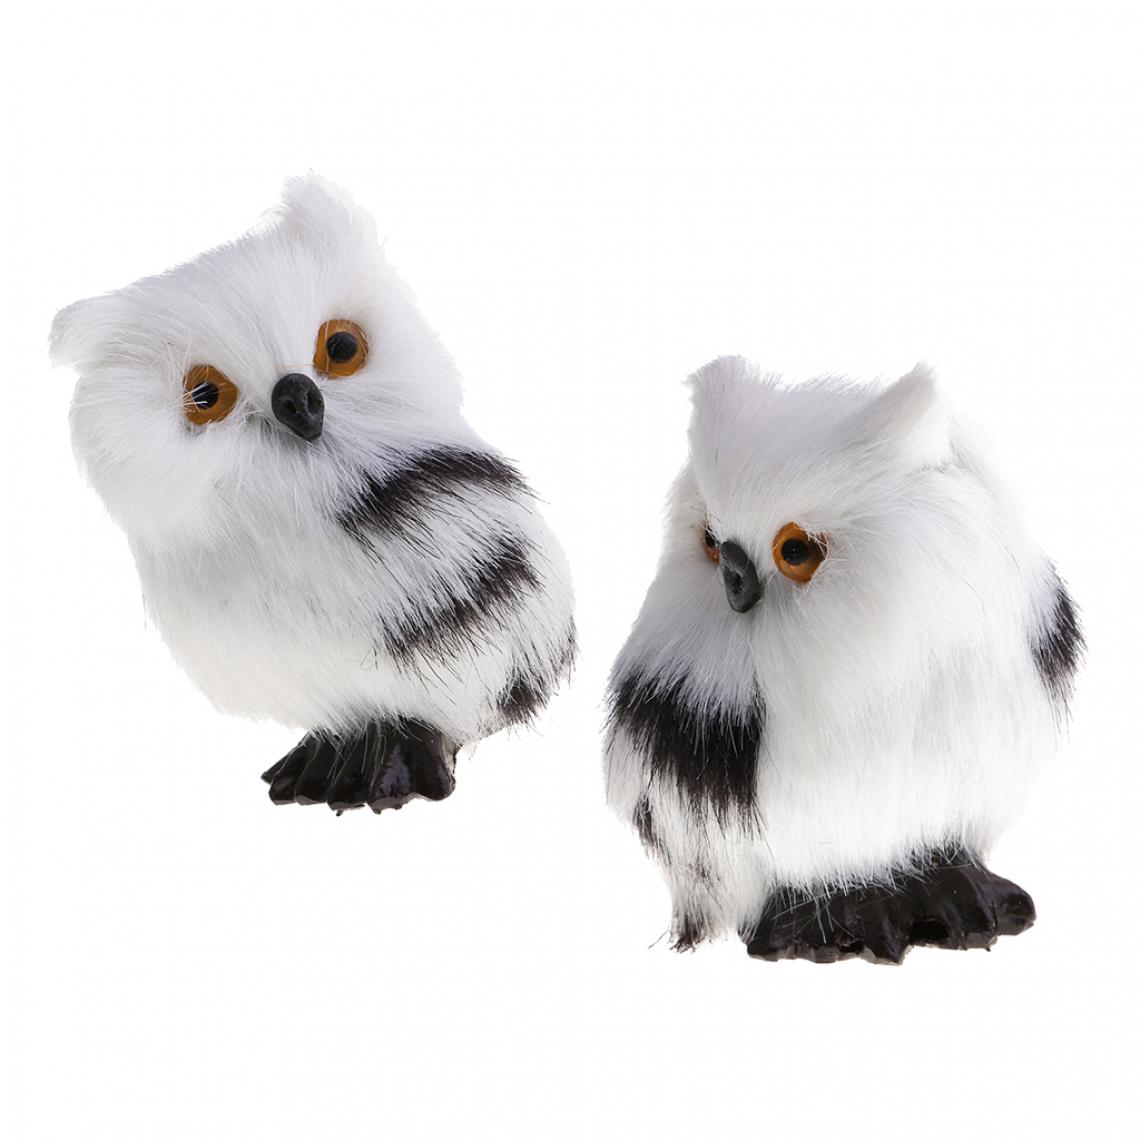 marque generique - 2x Animaux Night Bird Collection Modèle Peluche Owl Figure Modèle pour Ornements - Jouet pour chien